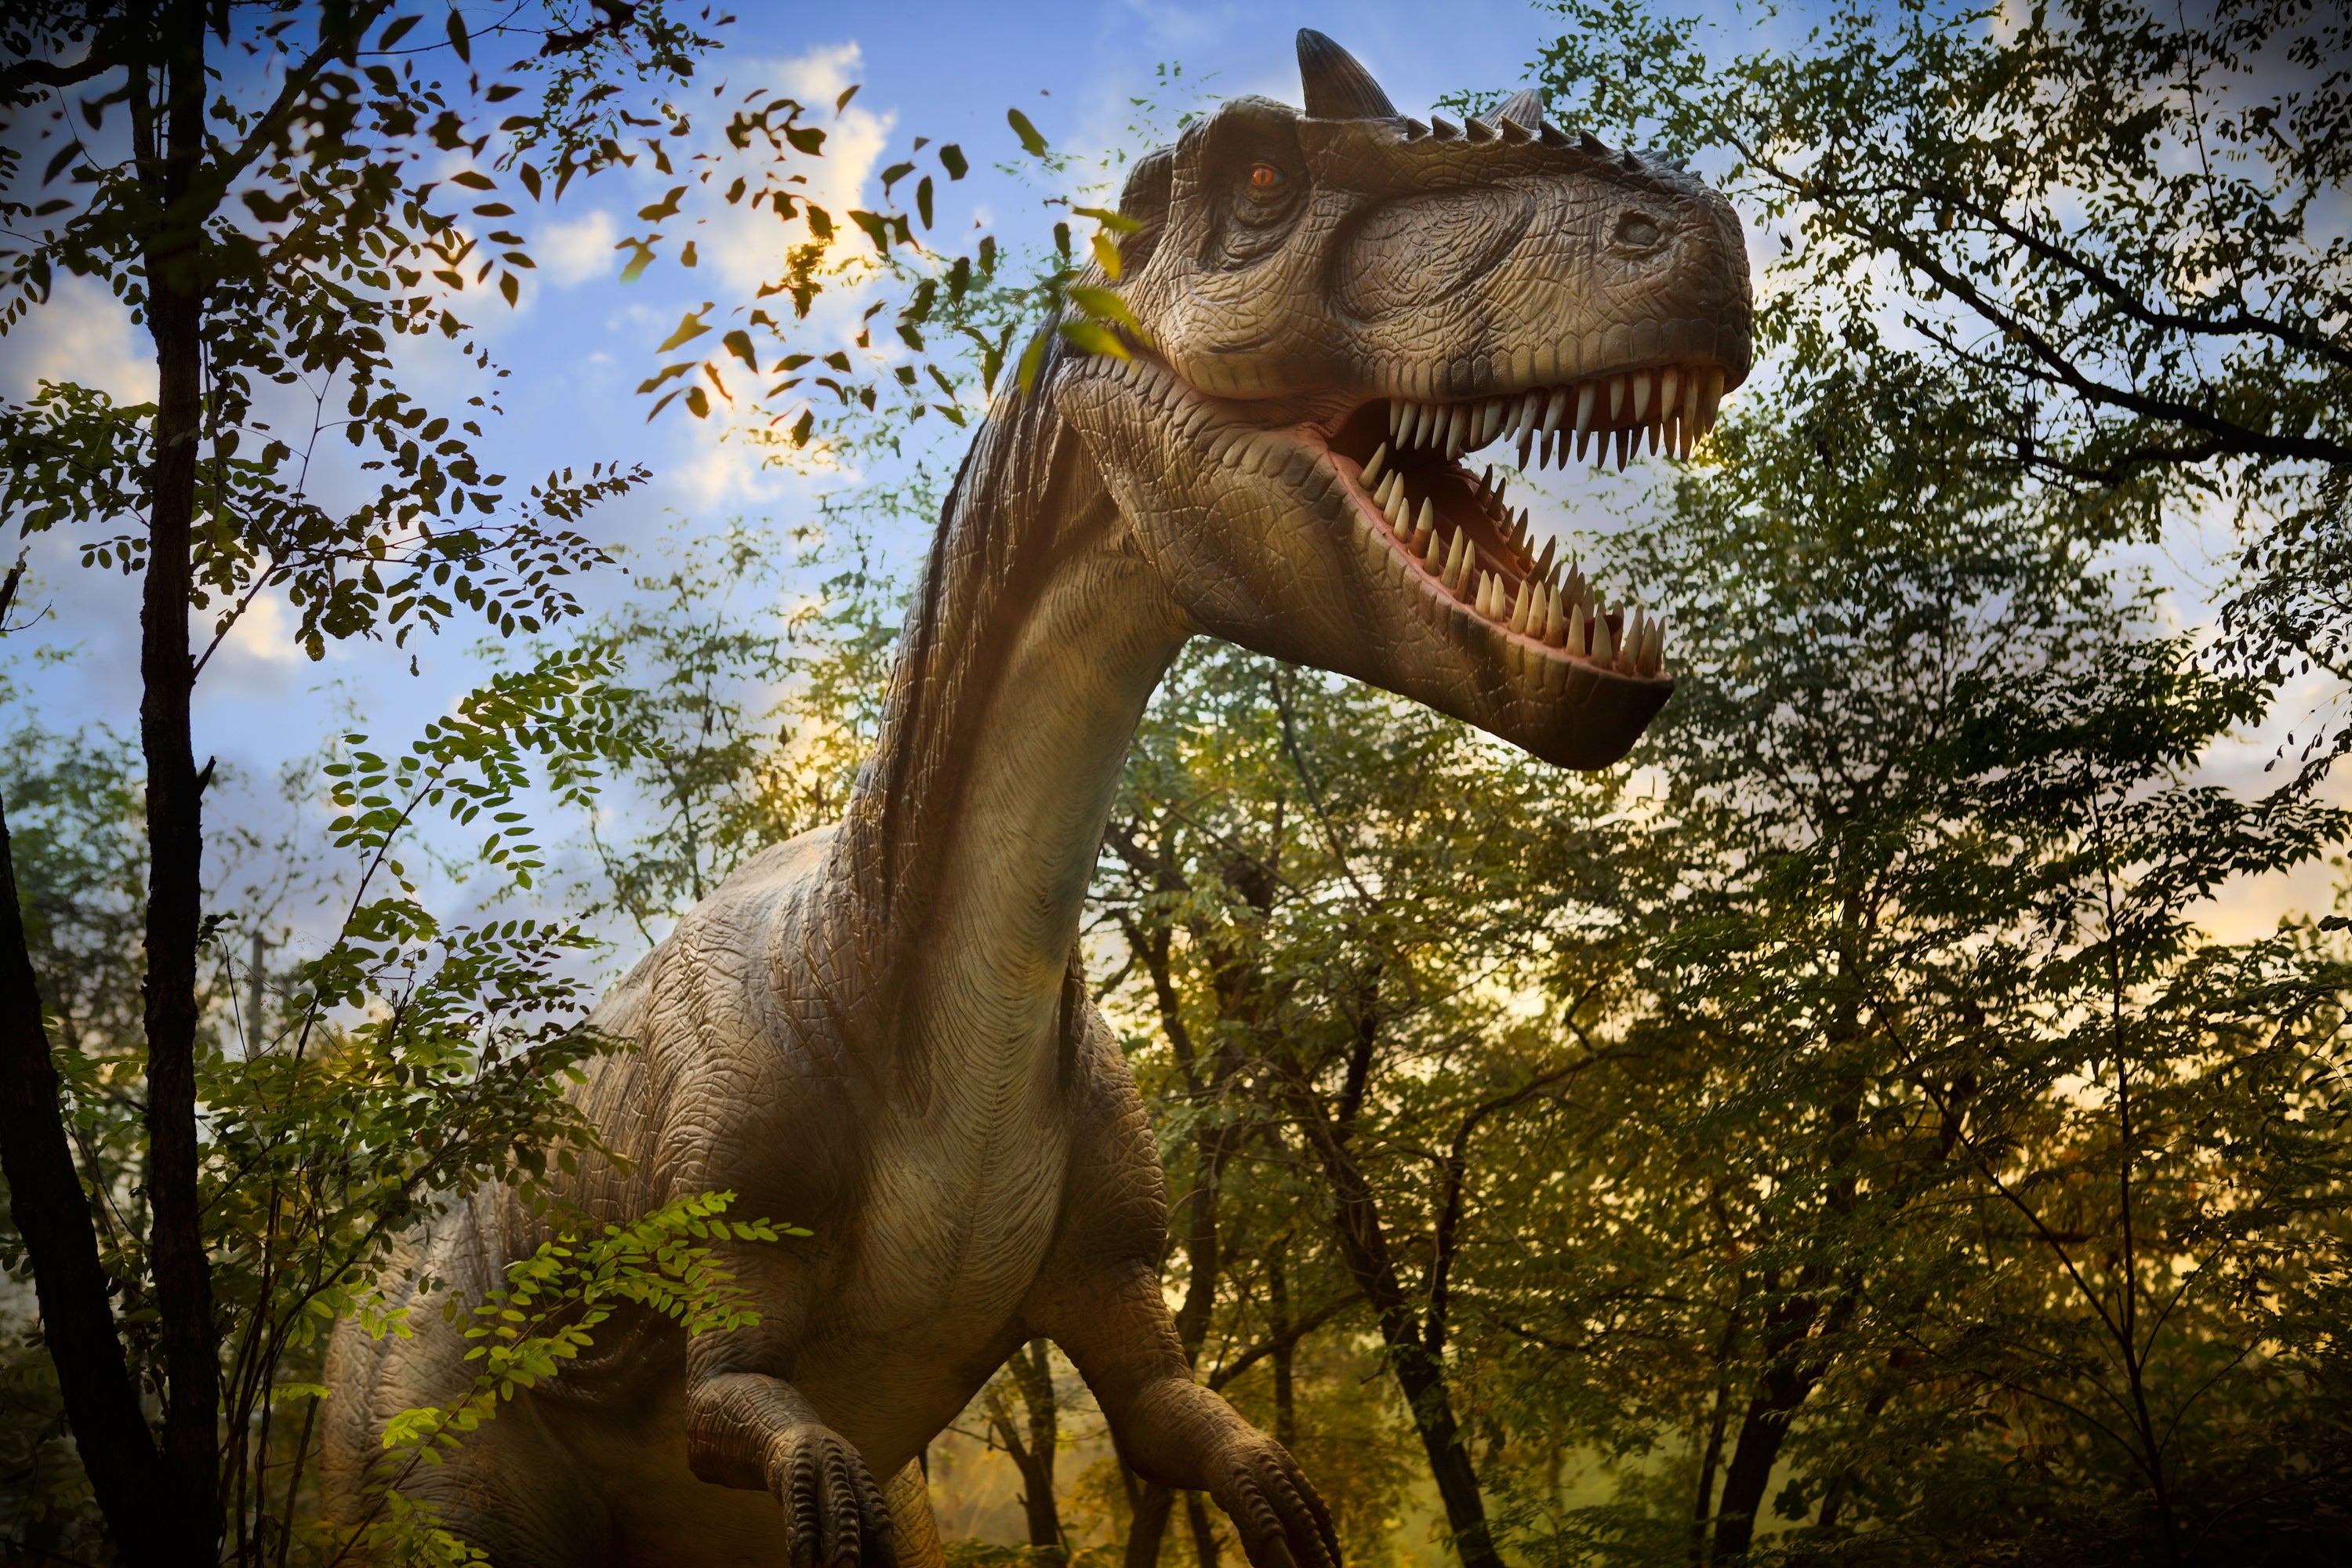 A T-Rex at Roaar! Dinosaur Adventure